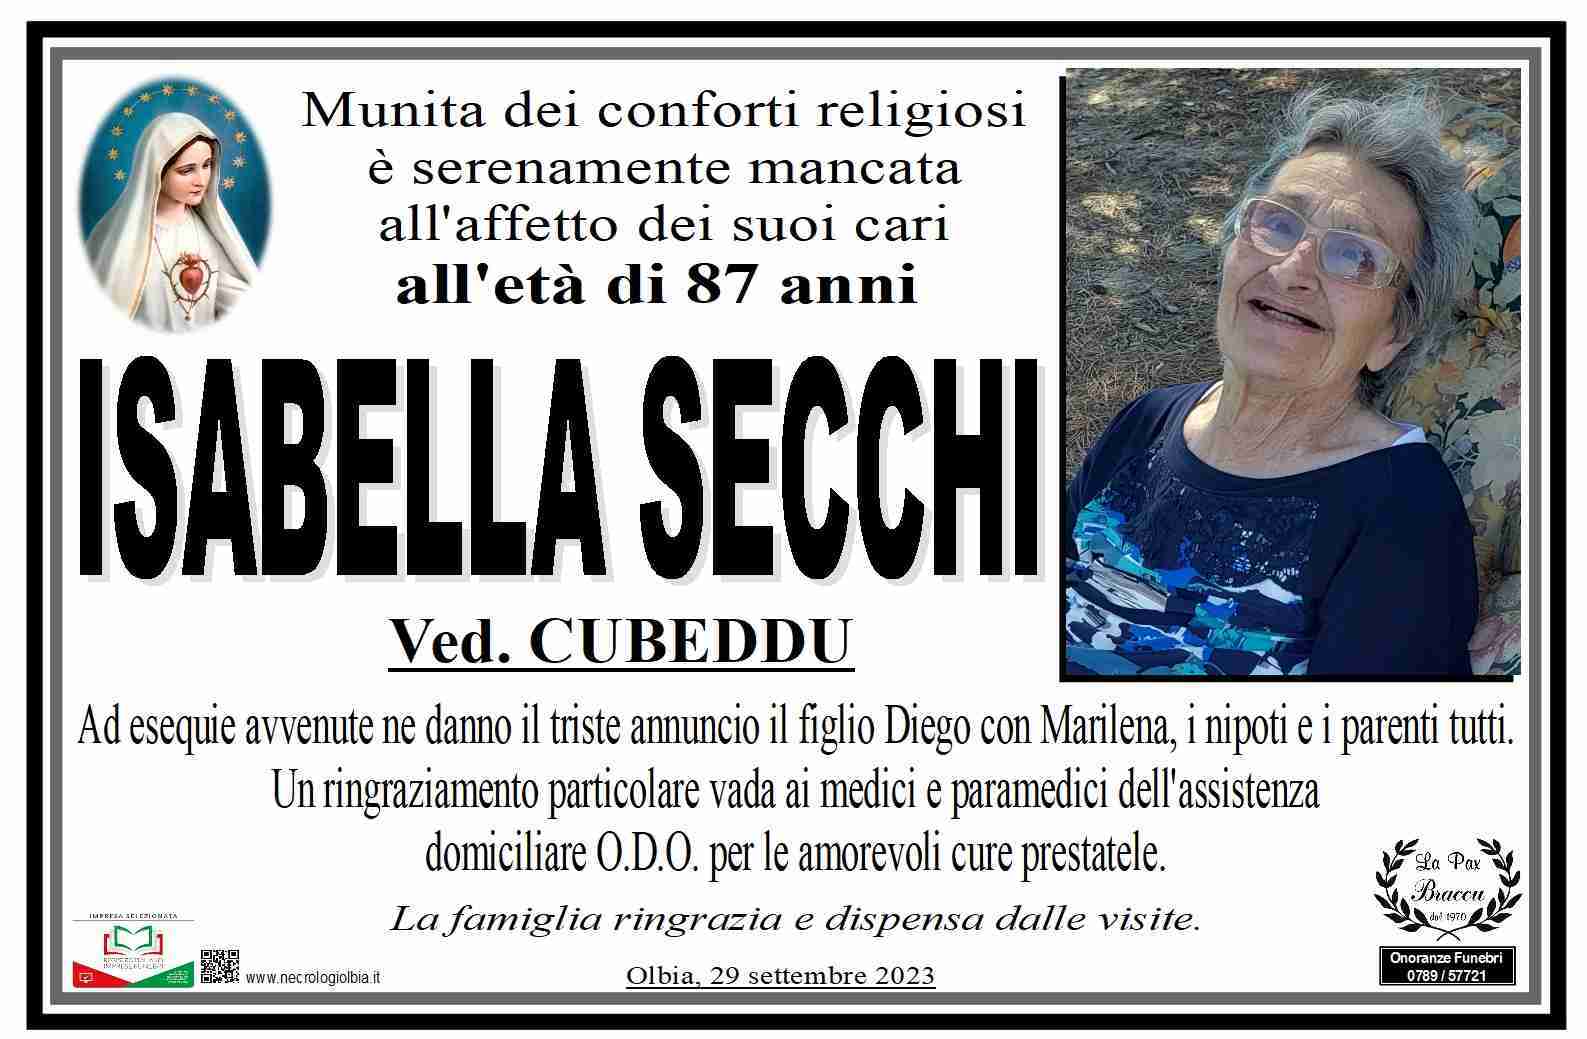 Isabella Secchi